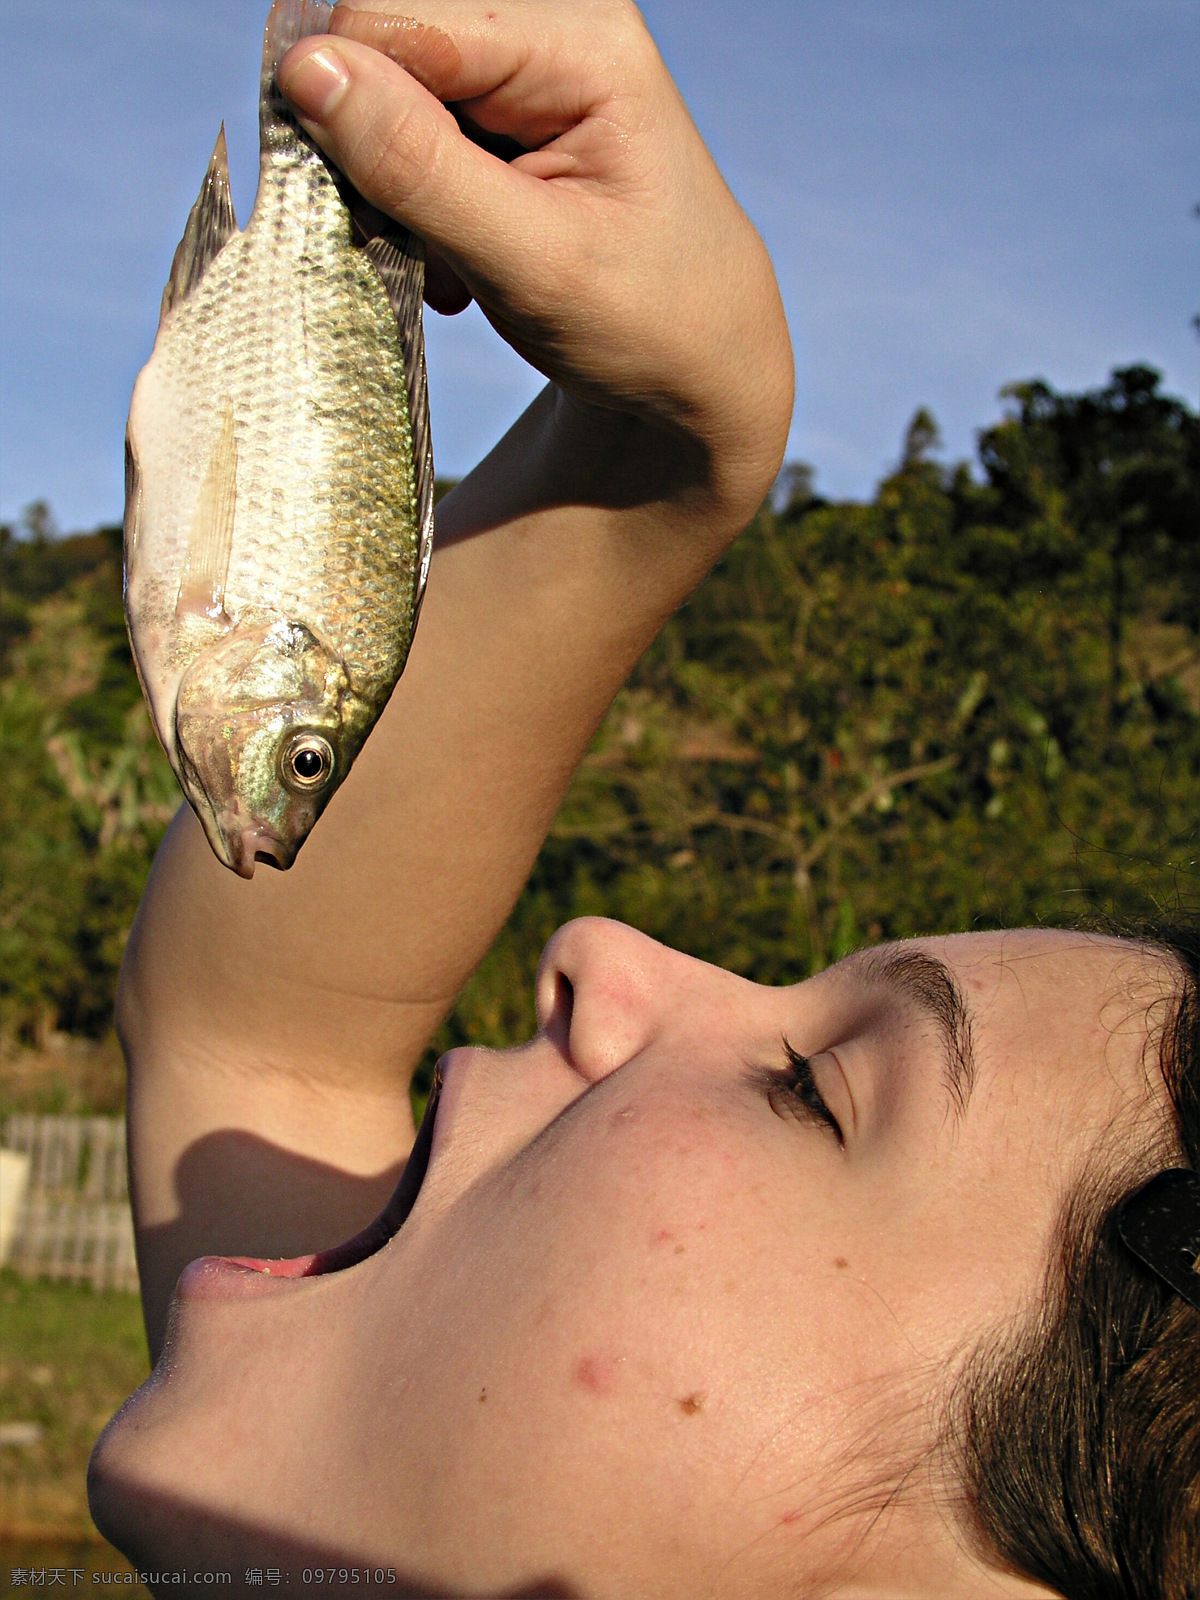 调皮 儿童 钓鱼 人物摄影 人物图库 小孩 鱼 调皮儿童 吃鱼 鱼类和人 抓鱼 生物世界